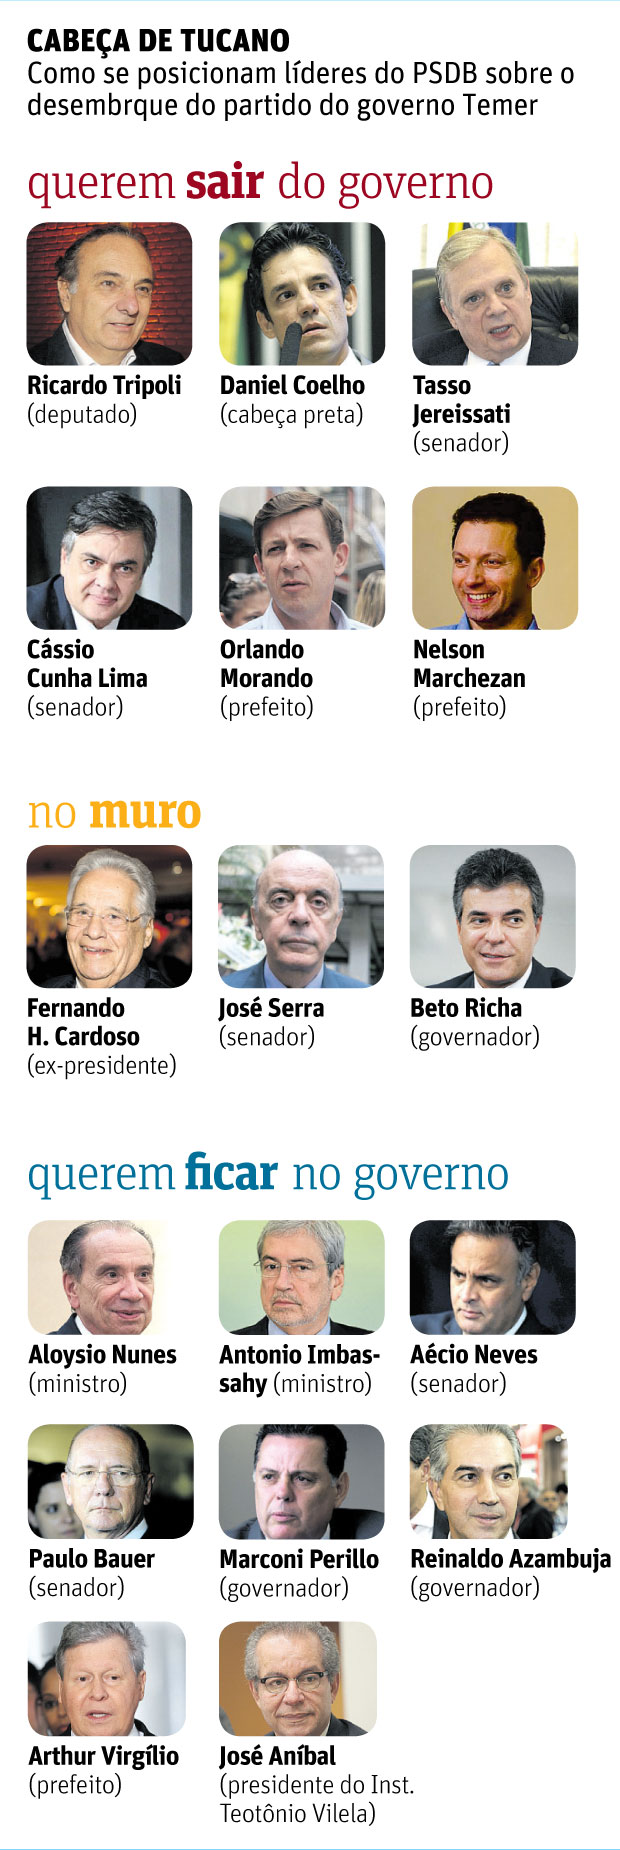 CABEA DE TUCANOComo se posicionam lderes do PSDB sobre o desembrque do partido do governo Temer